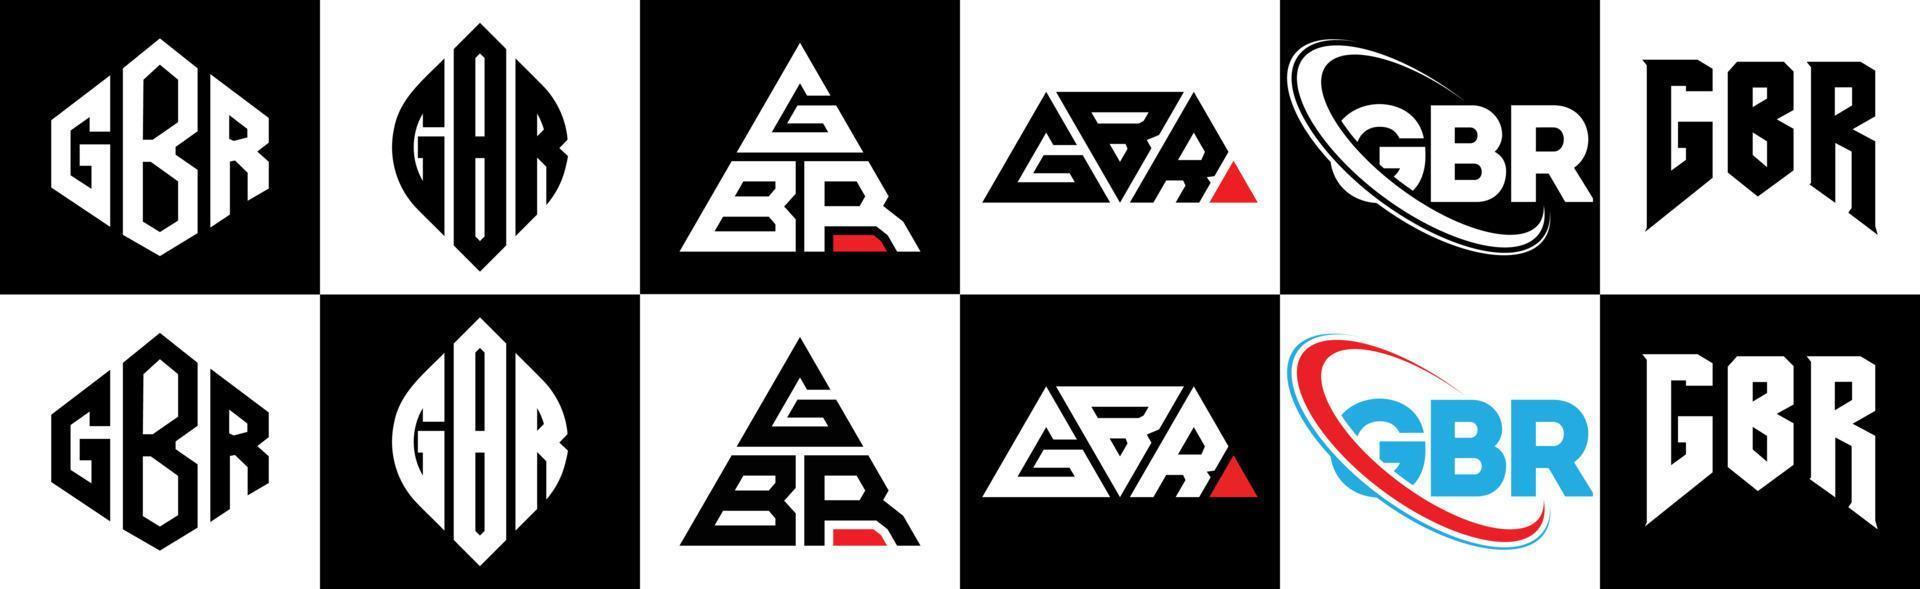 gbr-Buchstaben-Logo-Design in sechs Stilen. gbr polygon, kreis, dreieck, sechseck, flacher und einfacher stil mit schwarz-weißem buchstabenlogo in einer zeichenfläche. gbr minimalistisches und klassisches logo vektor